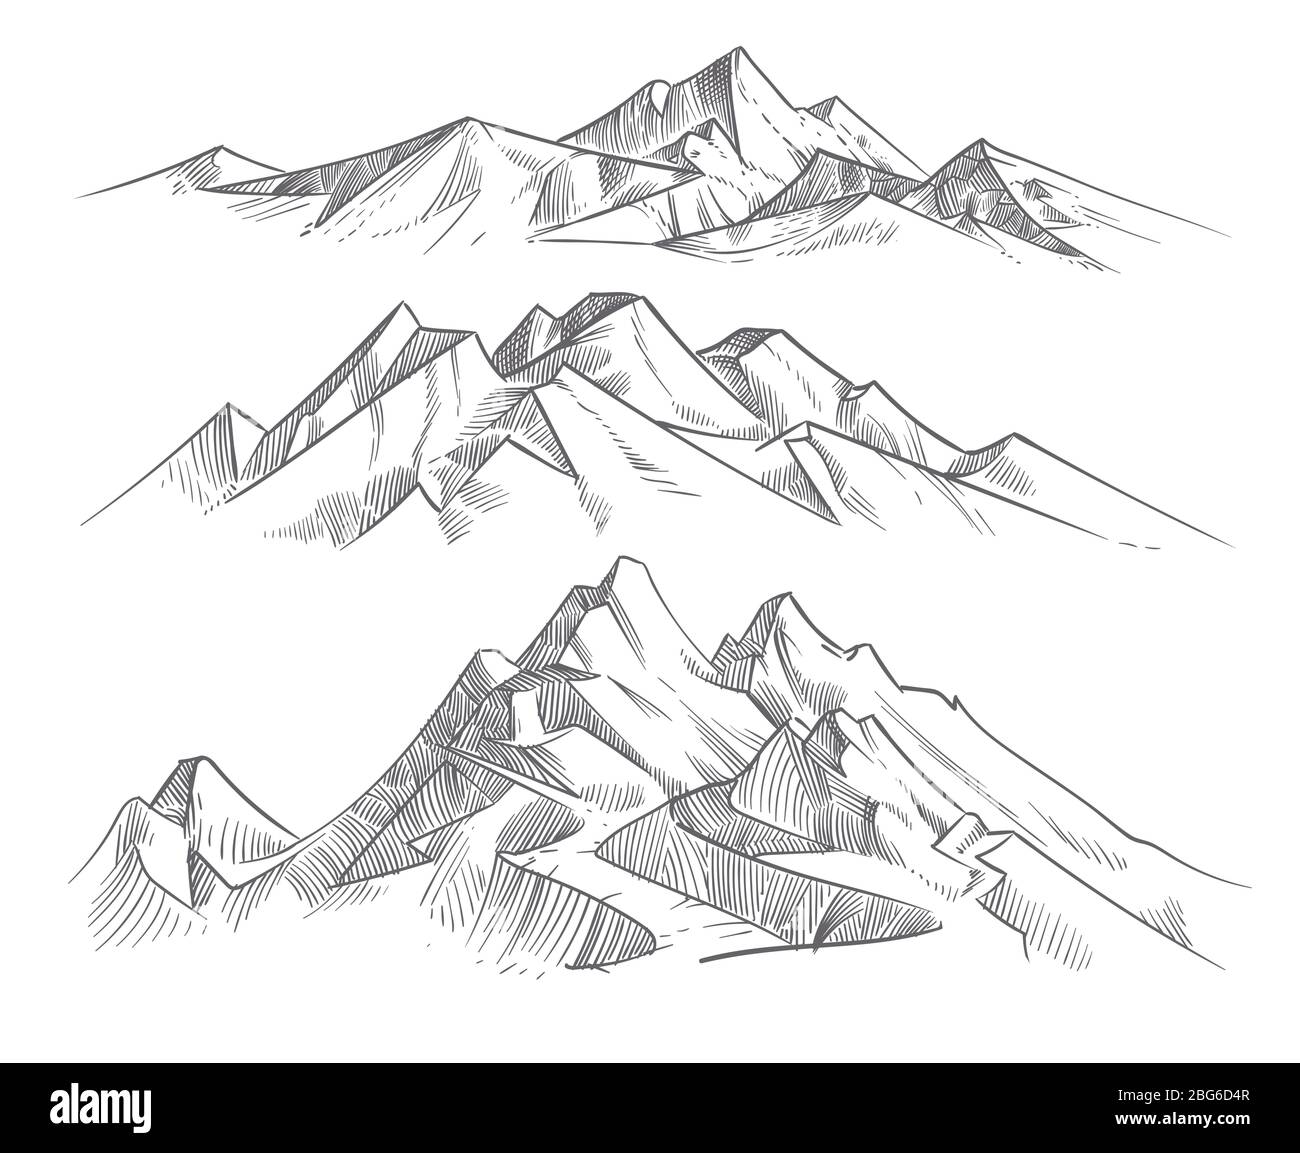 Handgezeichnete Bergketten im Gravurstil. Vintage Berge Panorama Vektor Natur Landschaft. Peak Outdoor Skizze, Landschaft Gebirge ill Stock Vektor